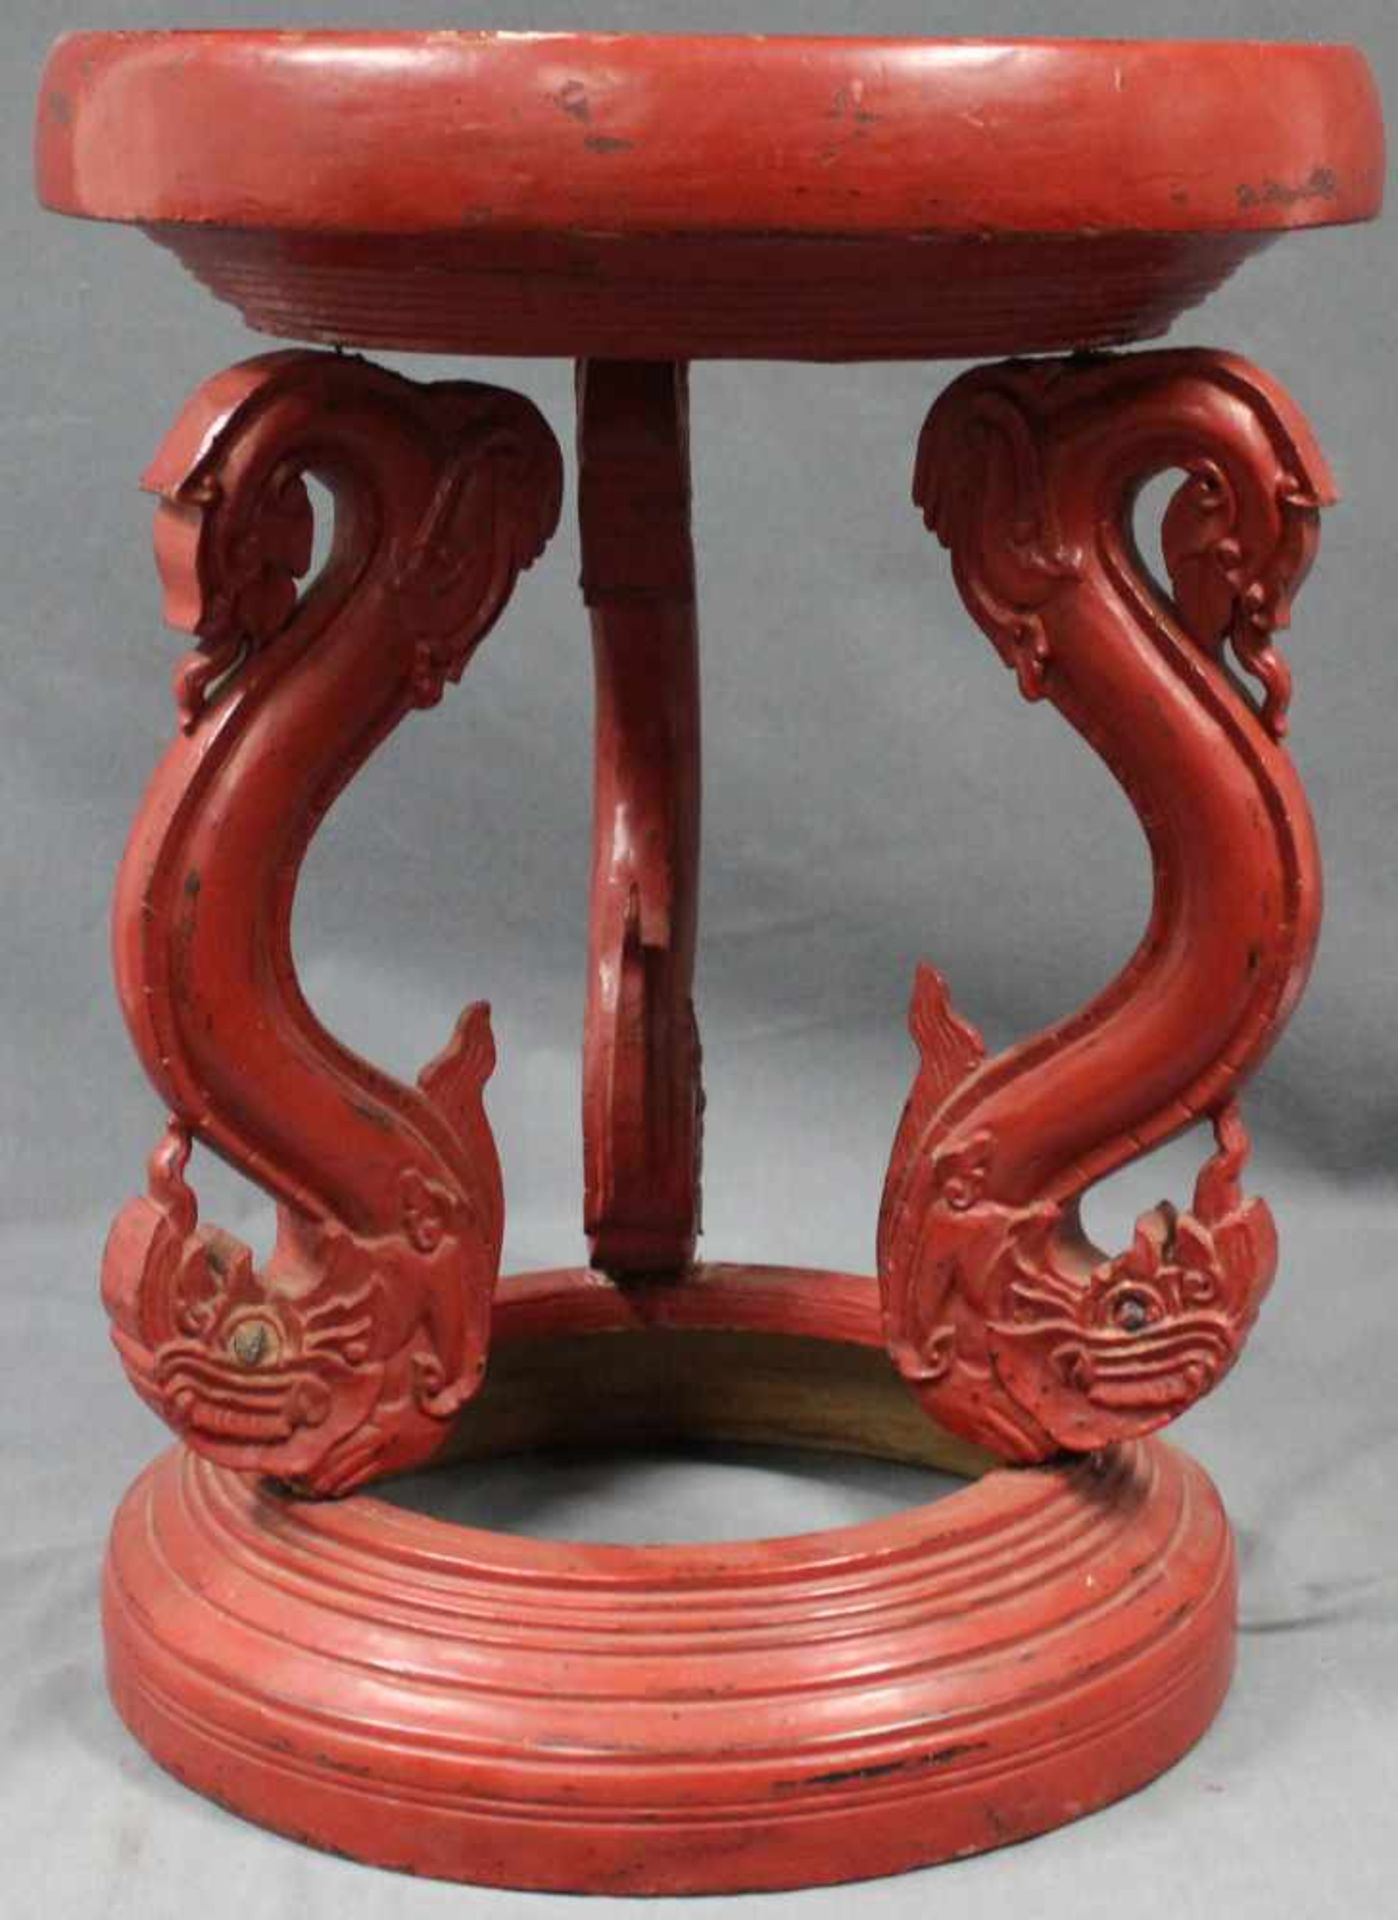 Beistelltisch, China, um 1900. Mit Drachenfüßen. 59 cm hoch. Durchmesser 47 cm. Holz, rot gefasst. - Image 3 of 5